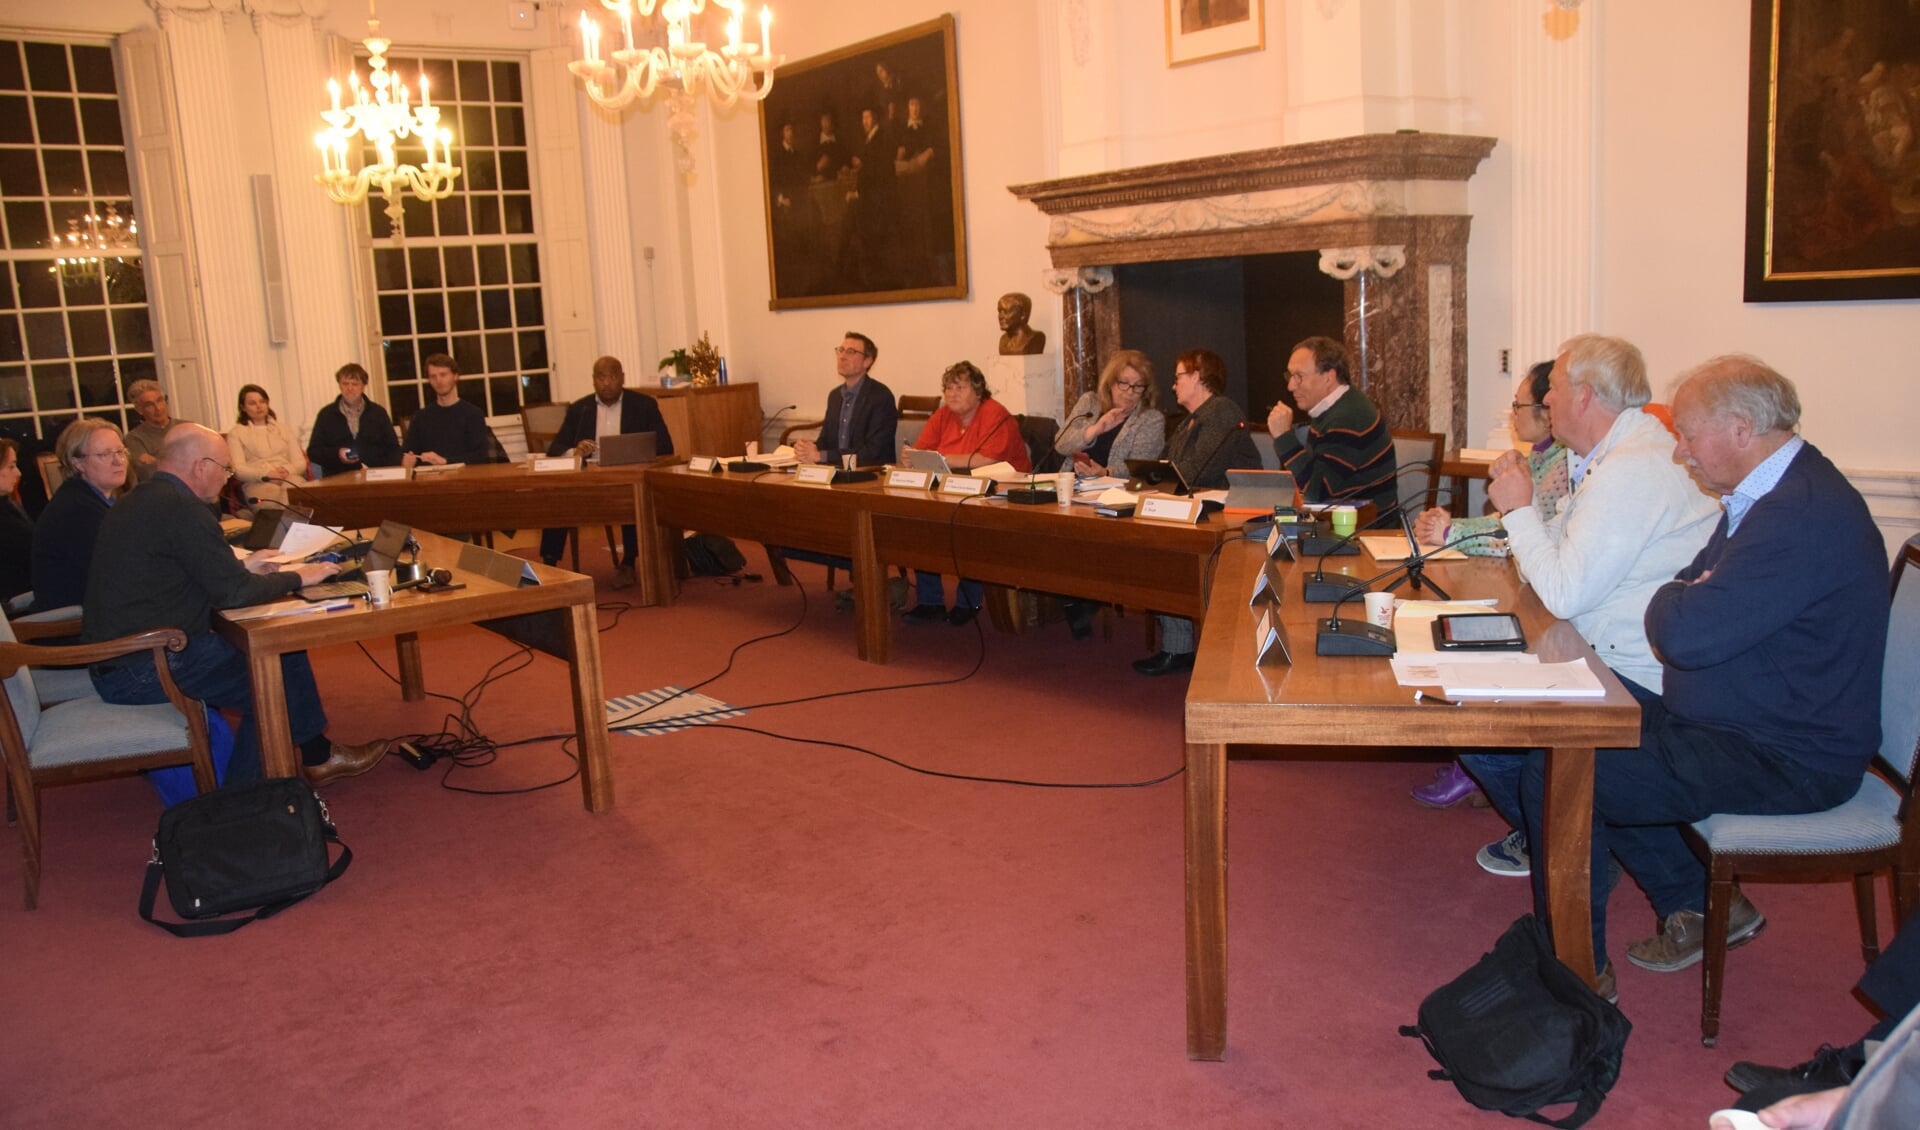 De bestuurscommissie heeft een andere opstelling in de raadzaal dan de gemeenteraad van Weesp had. 